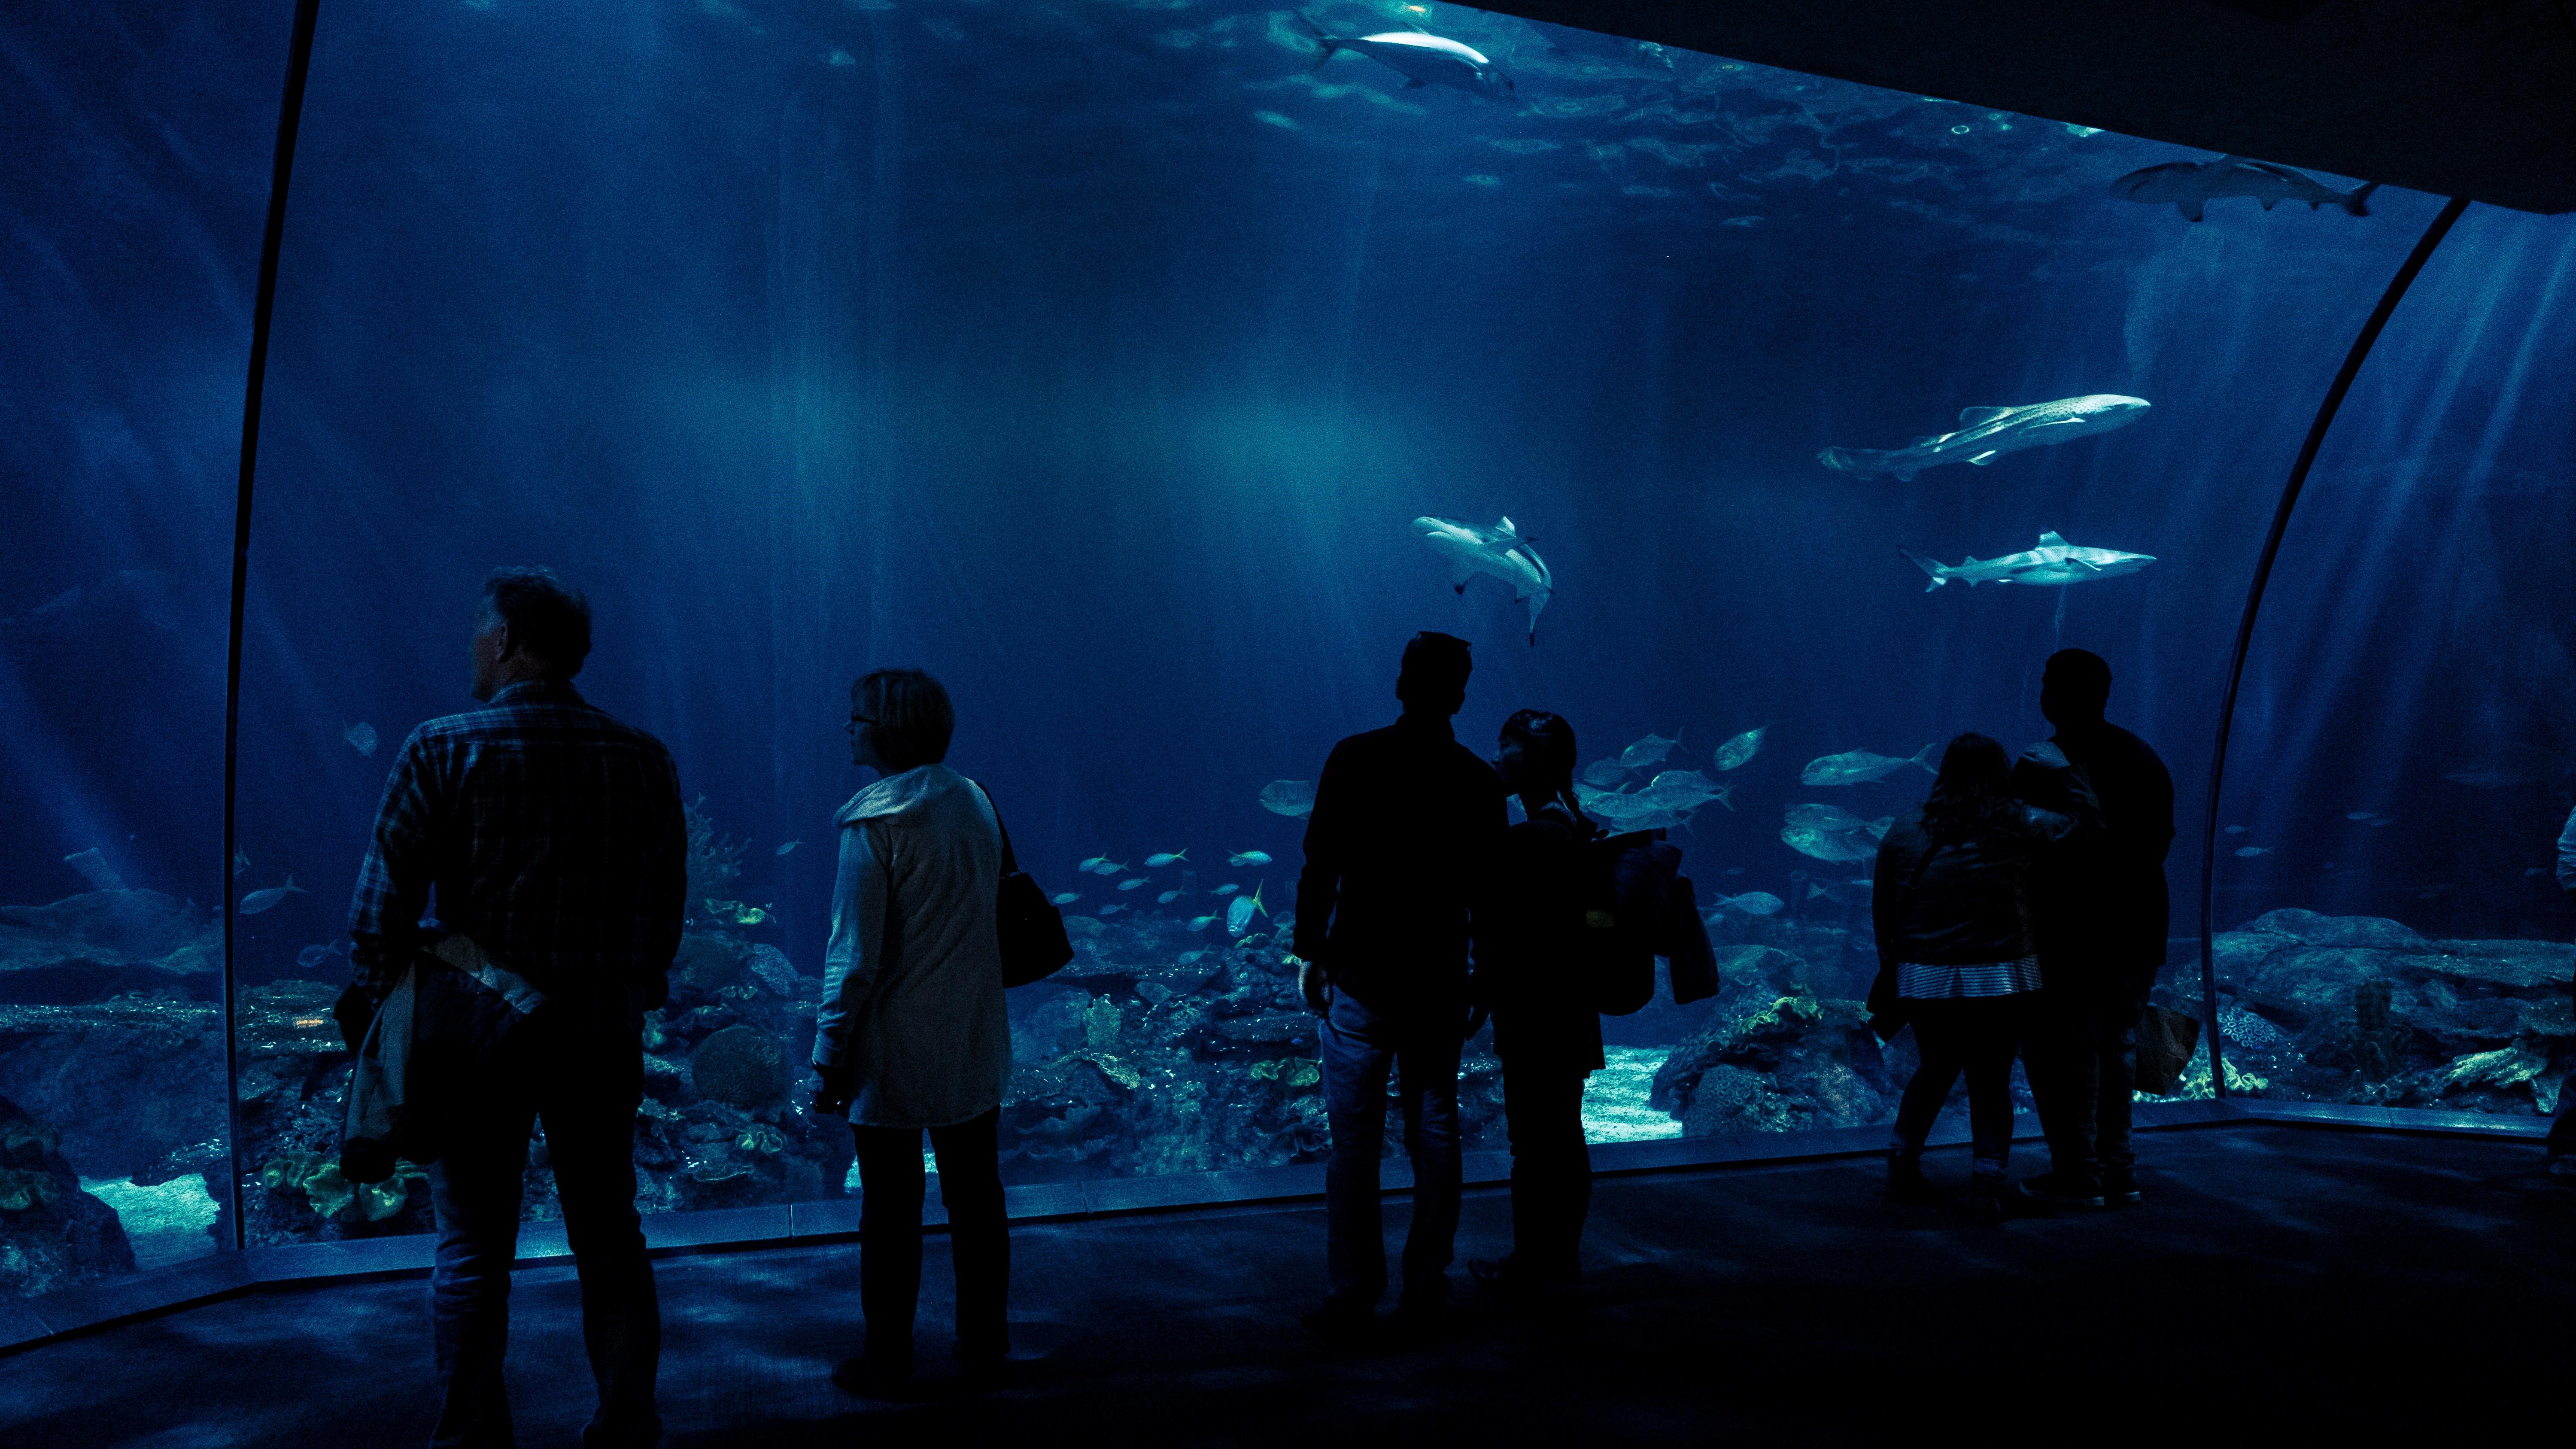 Аквариум наблюдать. Аквариум Шедда Чикаго. Океанариум Шедда. Аквариум мертвецов (Aquarium of the Dead). Чикаго аквариум Шедда в 1860.